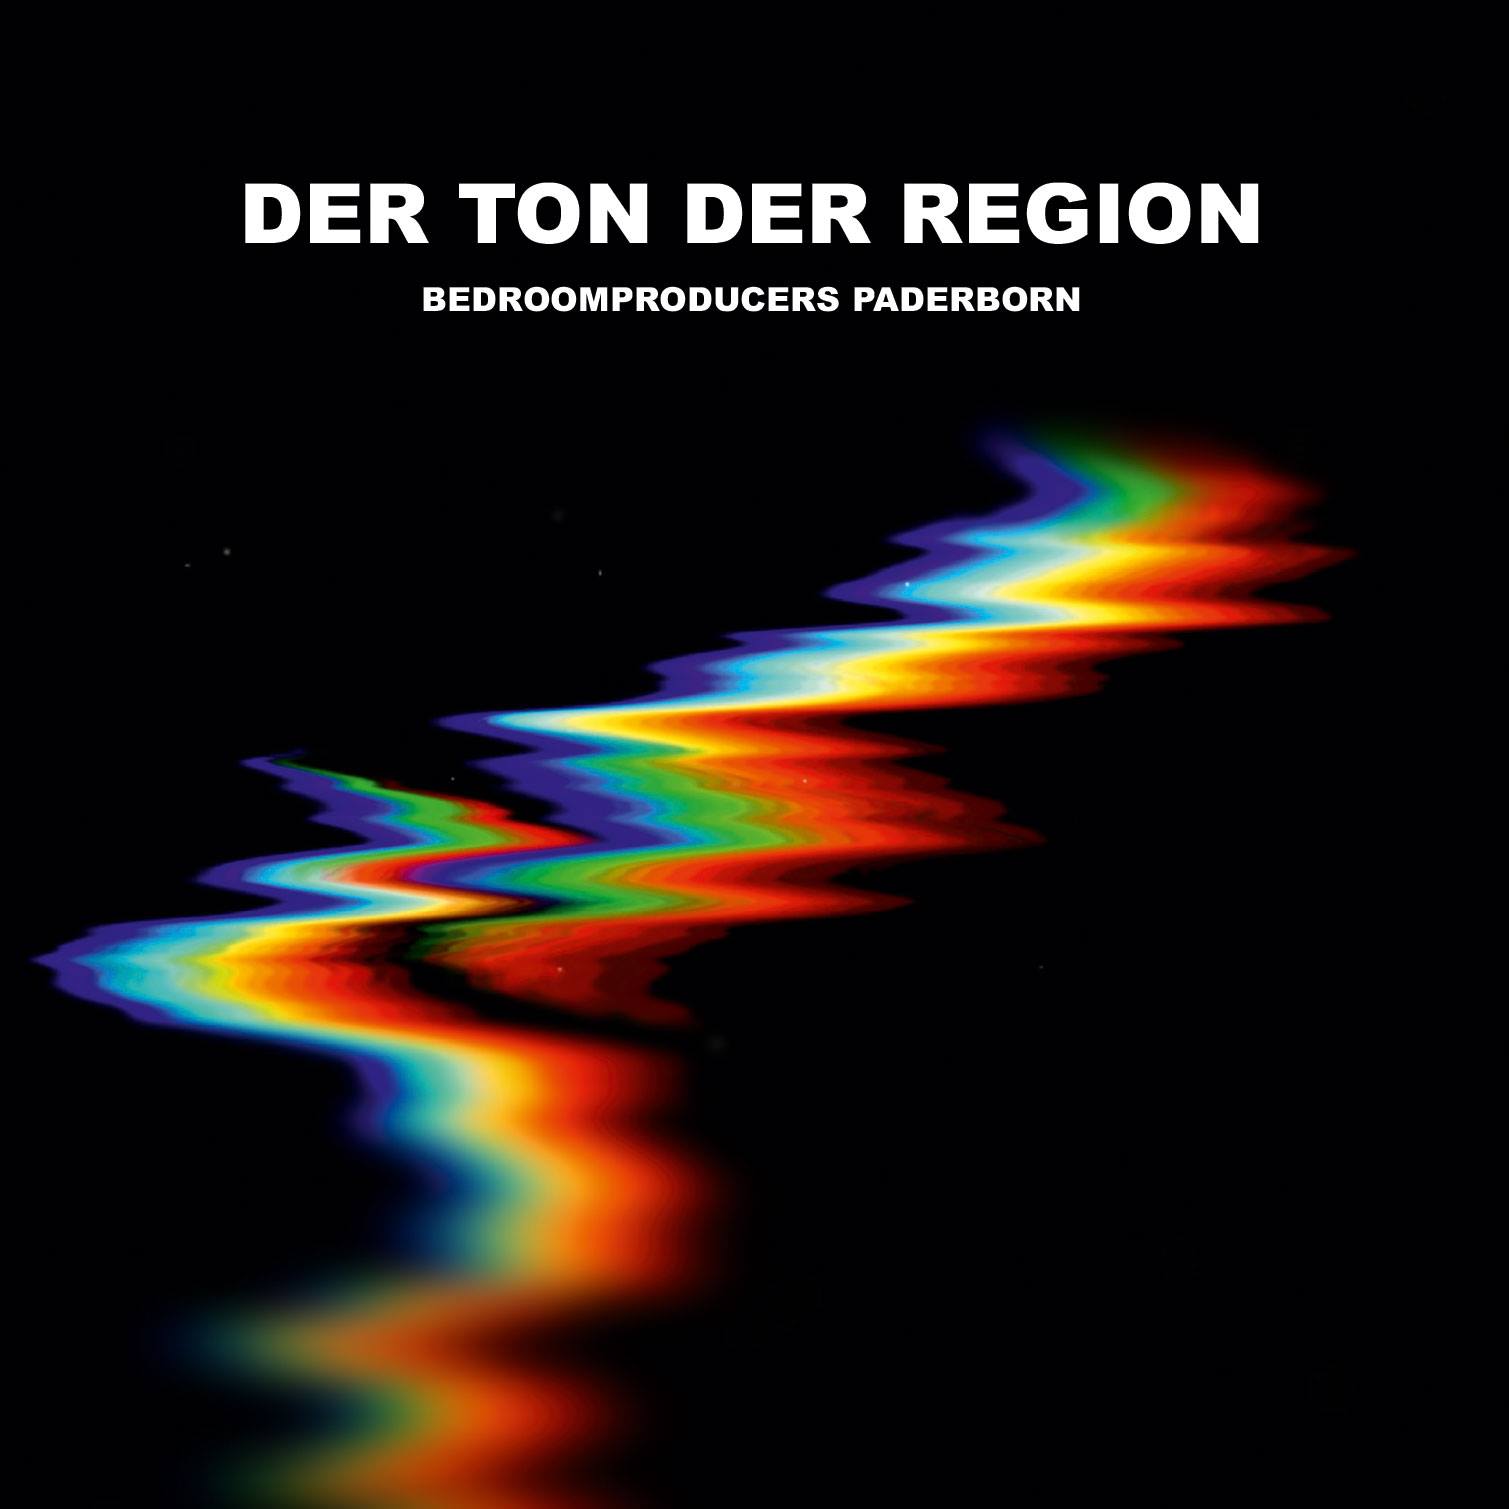 Das CD Cover der ersten Bedroomproducers Paderborn Compilation